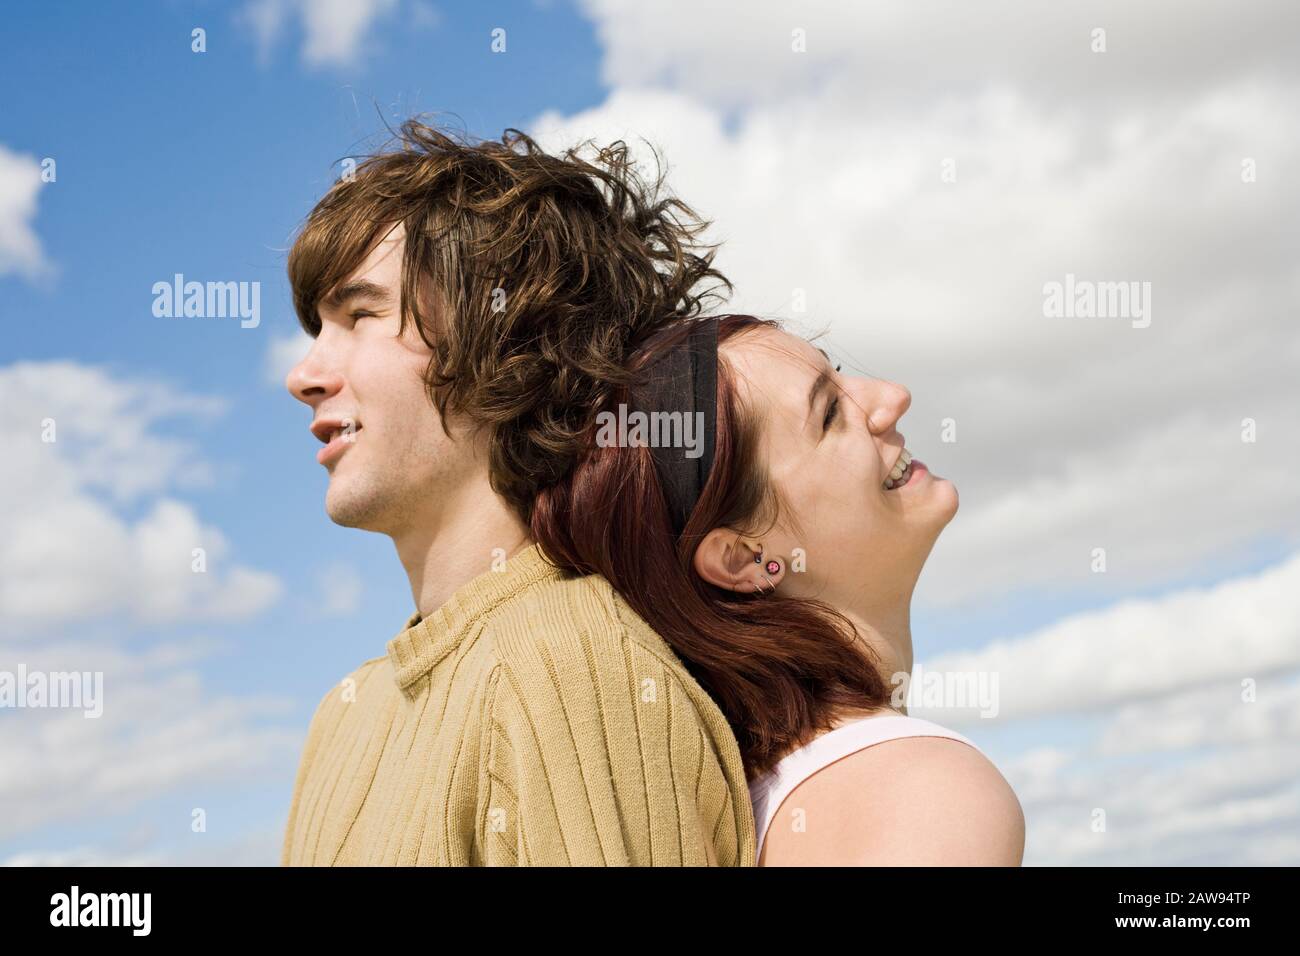 Una pareja adolescente riendo y sonriendo de vuelta al aire libre Foto de stock